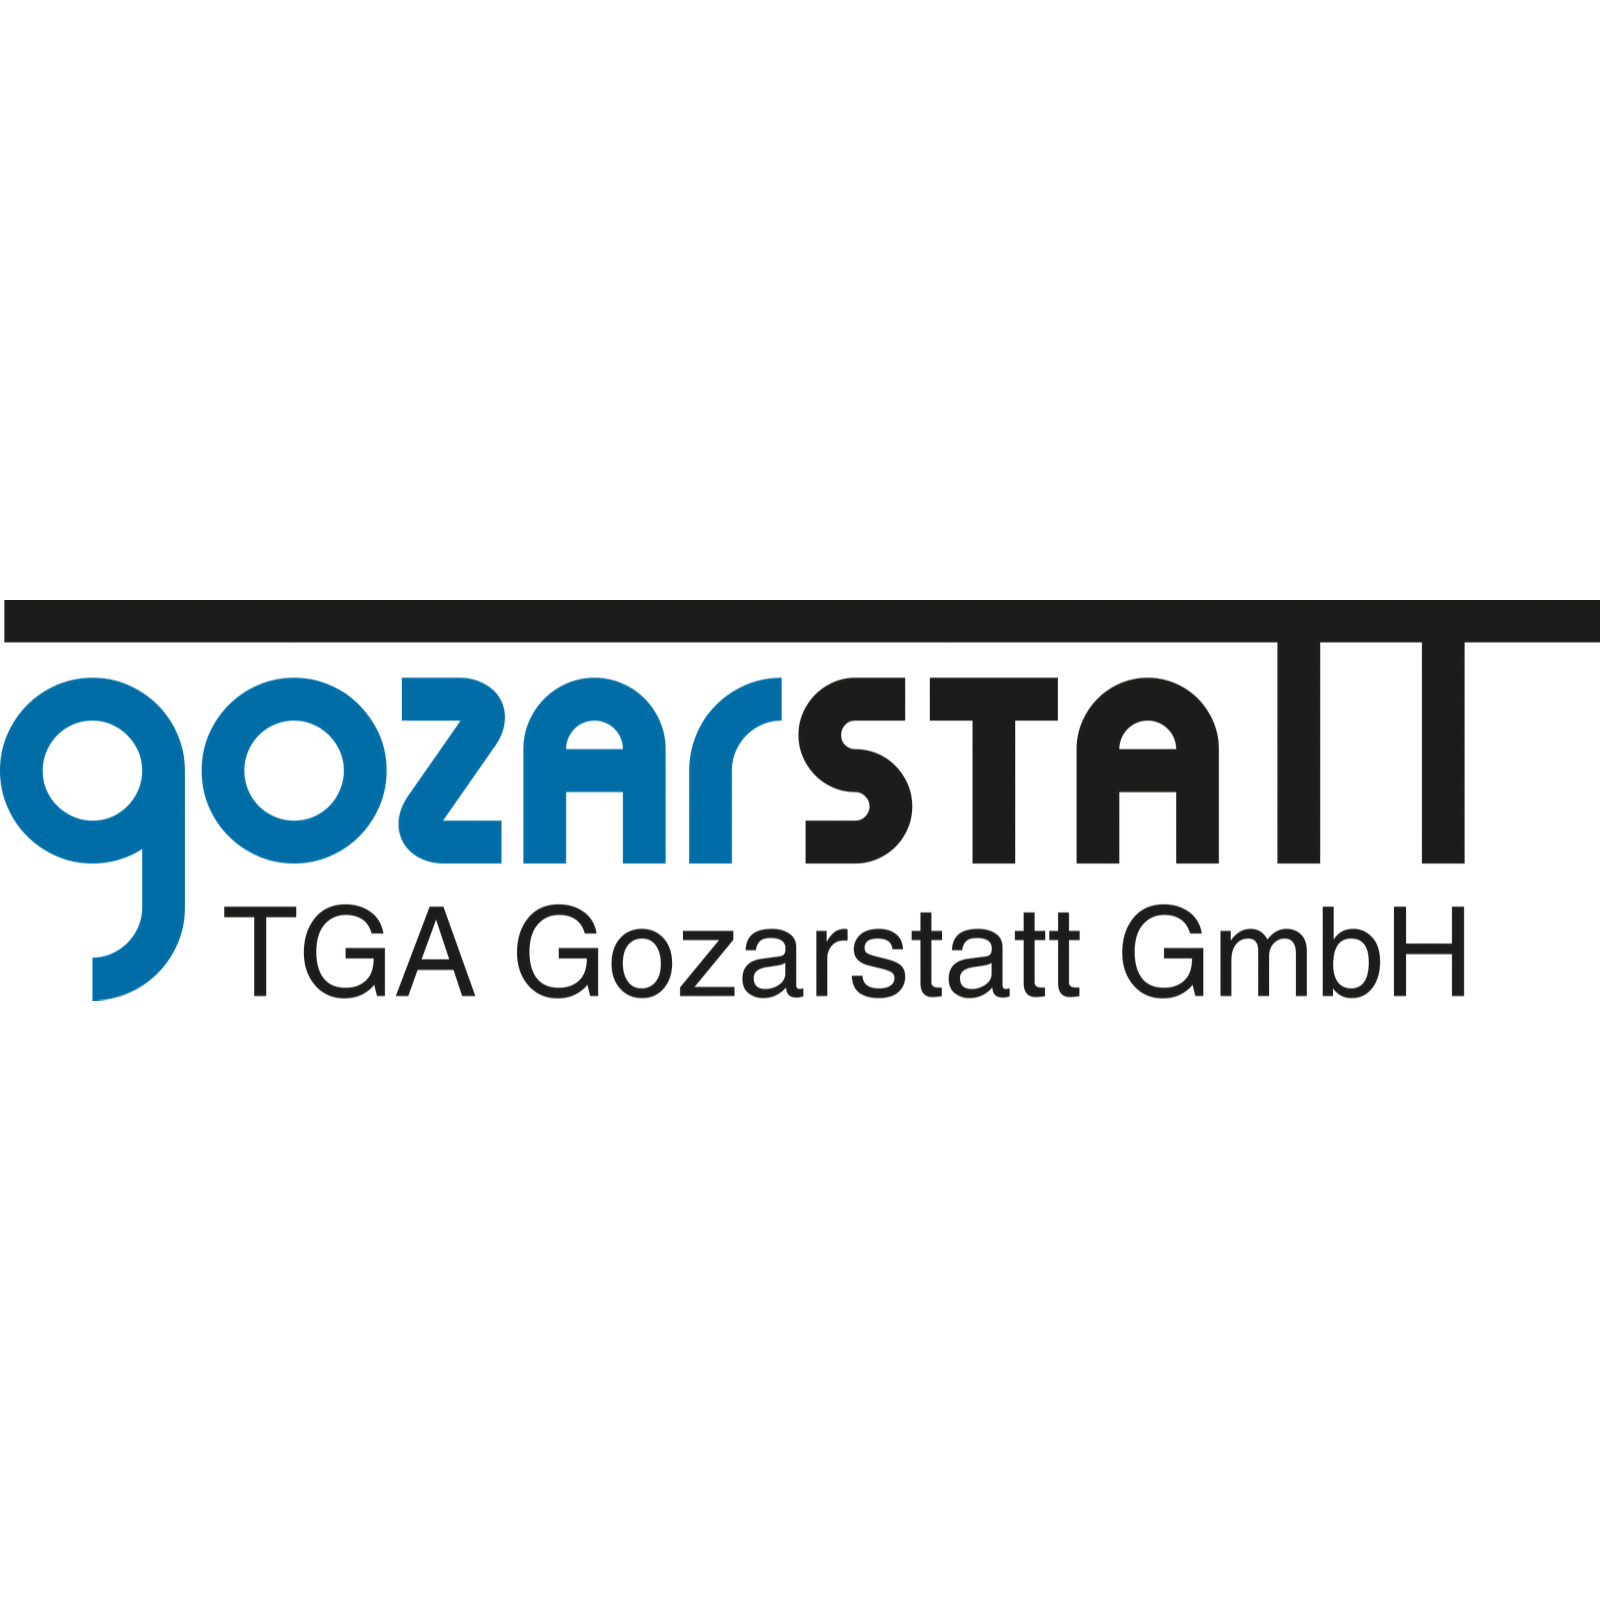 TGA Gozarstatt GmbH Dipl. Ök. Jörn Müller  